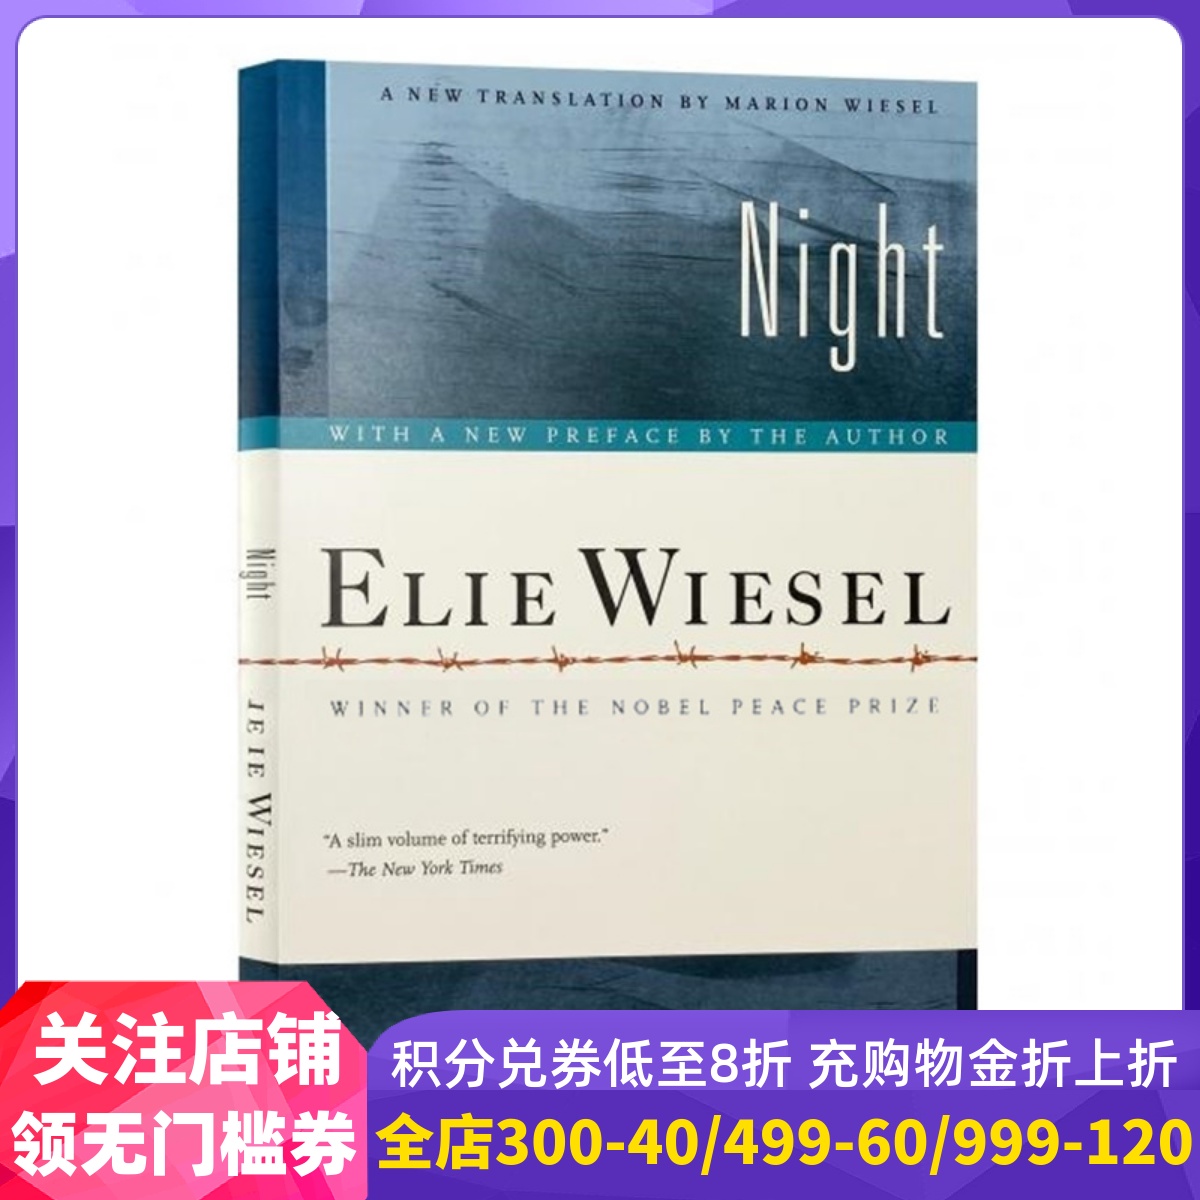 英文原版 埃利·威塞尔：夜 奥普拉读书会选书 诺贝尔和平奖获得者 Elie Wiesel: Night